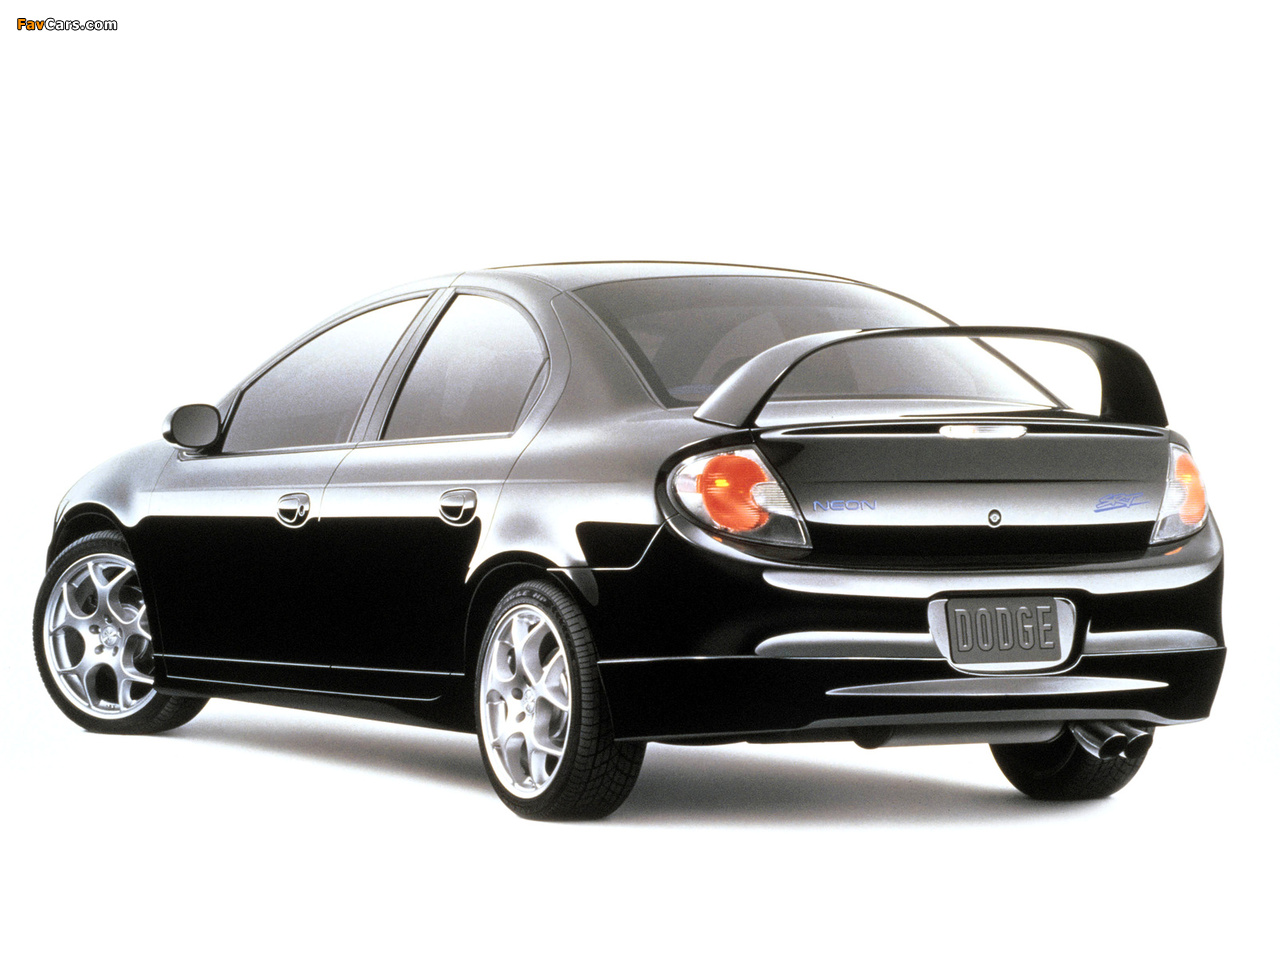 Dodge Neon SRT Concept 2000 images (1280 x 960)